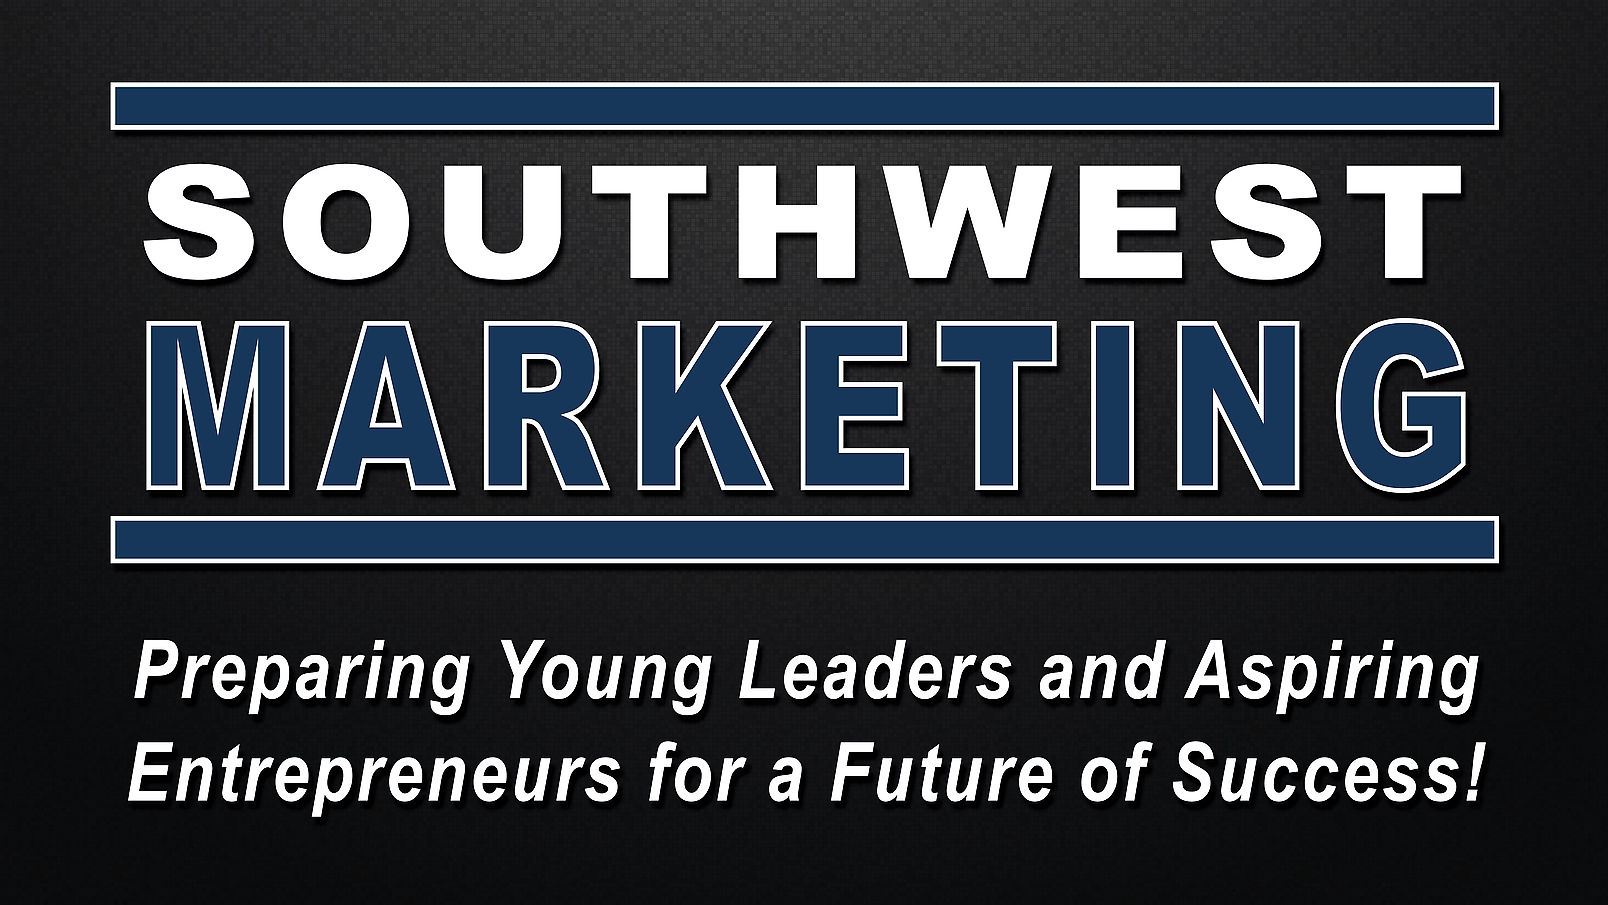 The Southwest Marketing Program